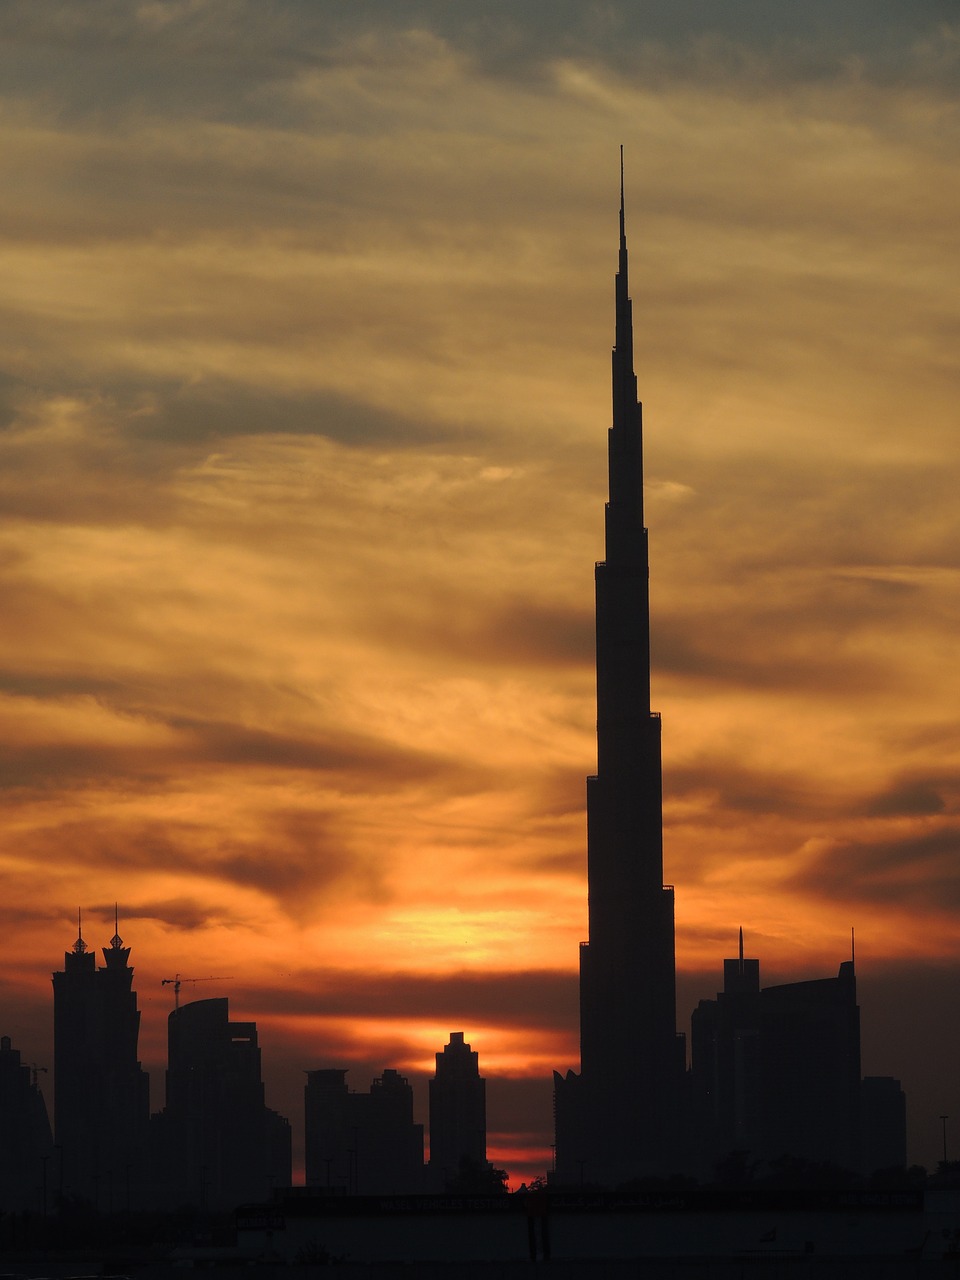 burj khalifa at the top reach out free photo